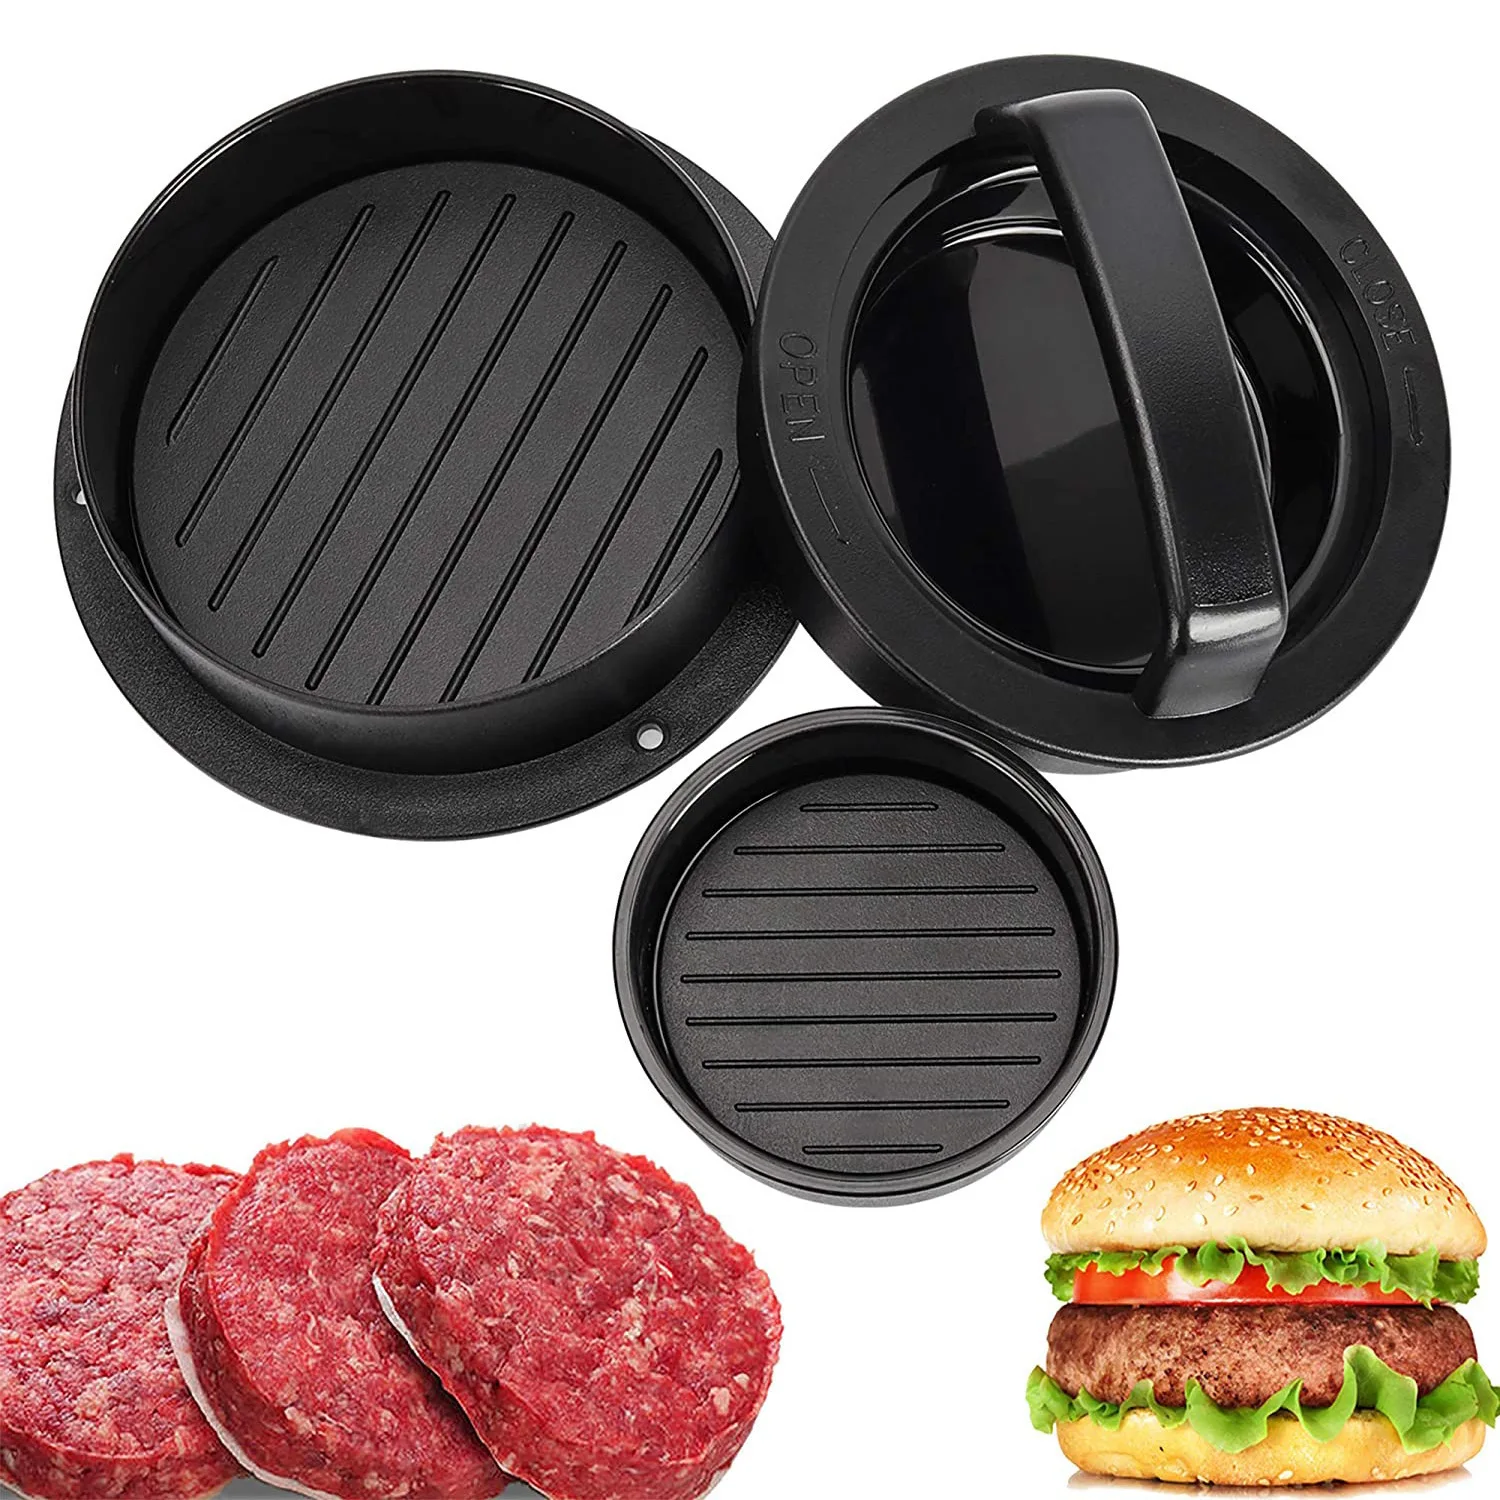 

Пресс-форма для мяса из АБС-пластика для гамбургеров круглой формы с антипригарным покрытием, пресс-форма для бургеров, говядин, гриля, Пирогов, кухонные аксессуары